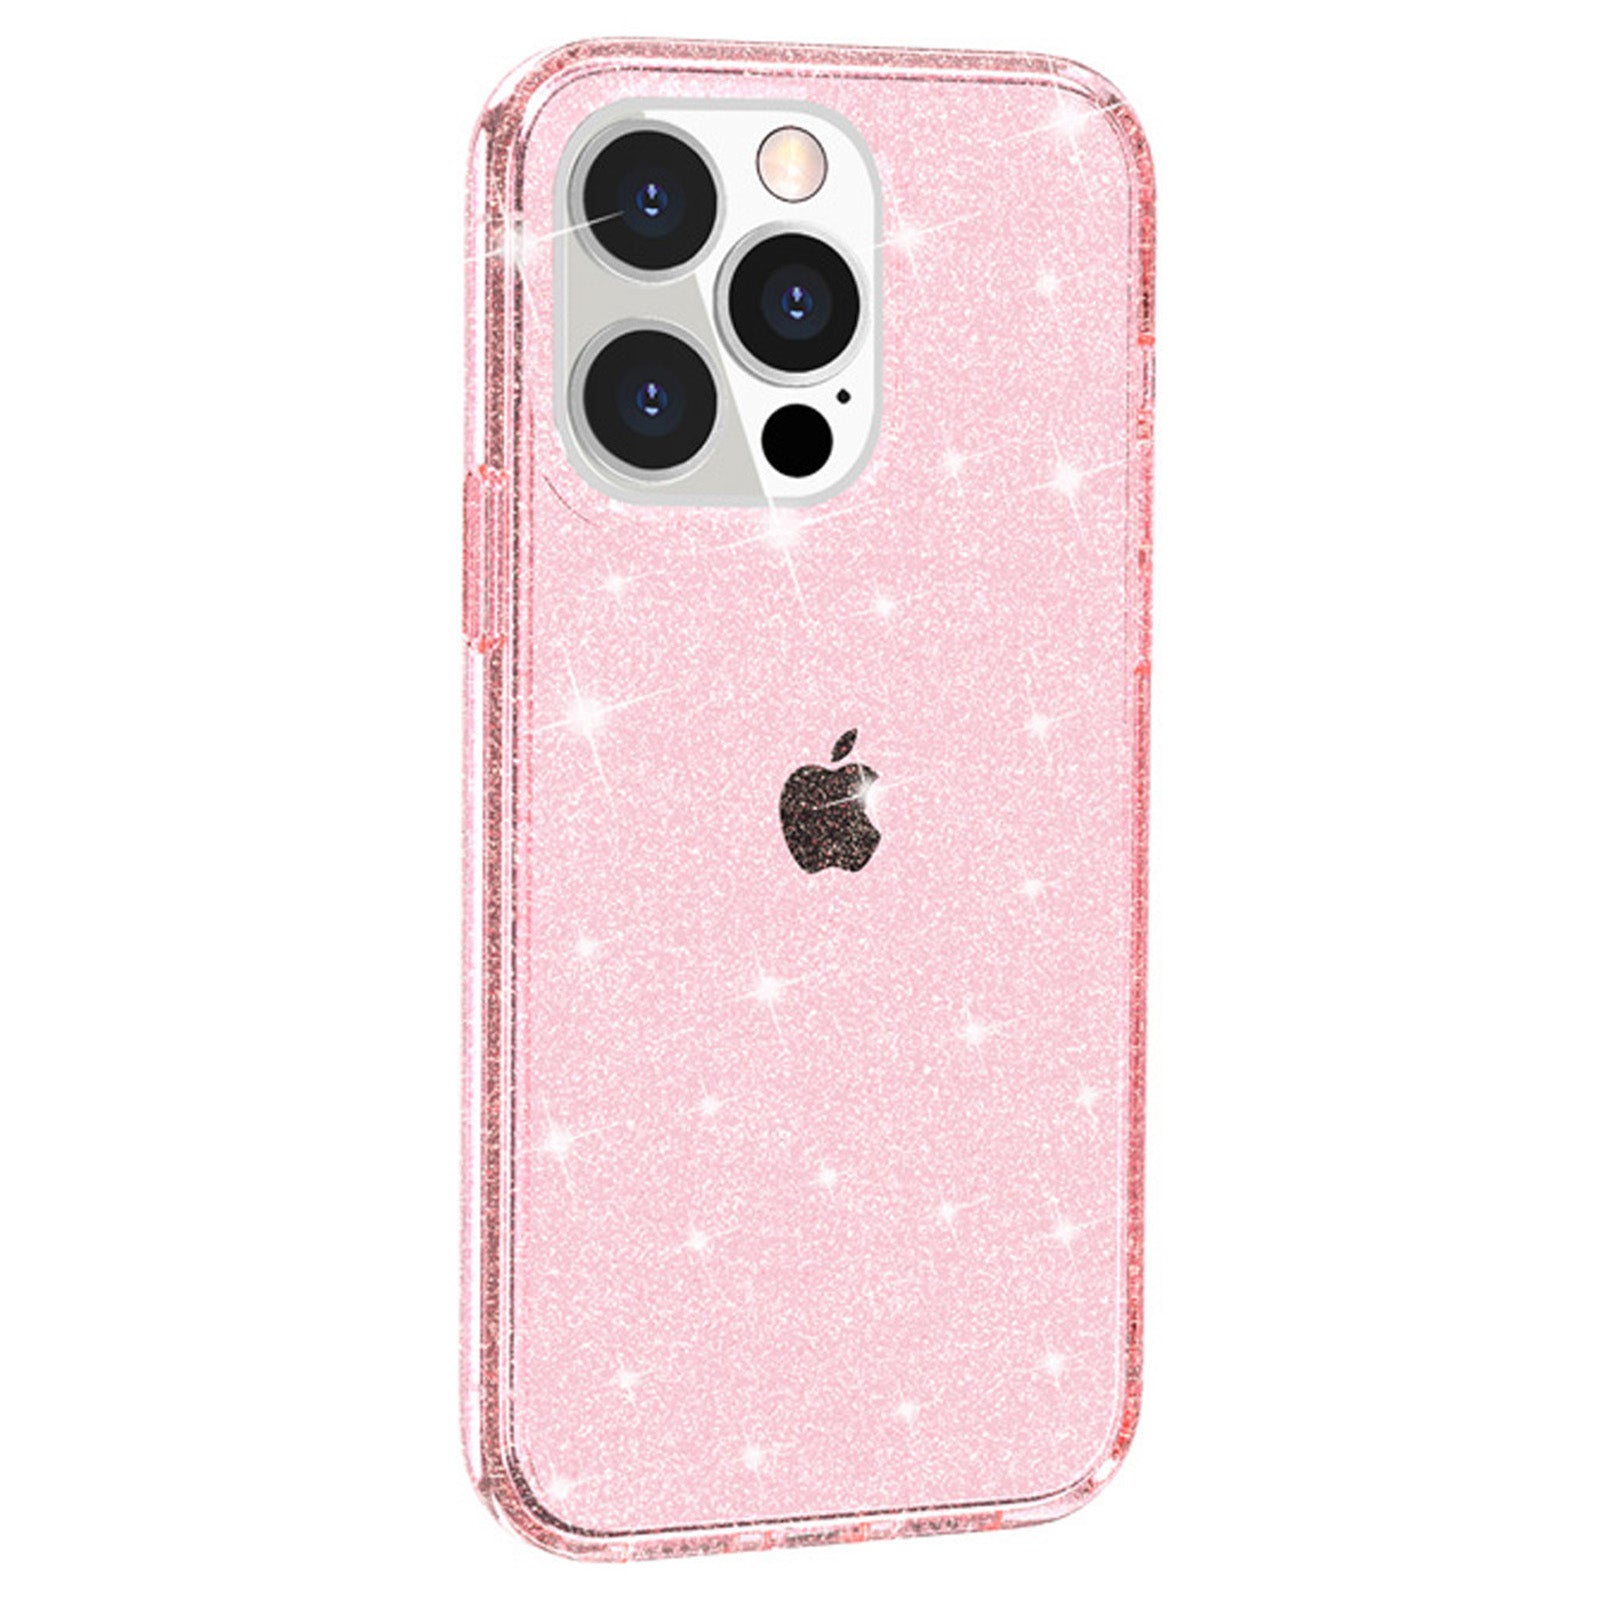 Uniqkart for iPhone 15 Pro Sparkly Glitter Anti-Scratch Case Hard PC + Soft TPU Phone Cover - Pink